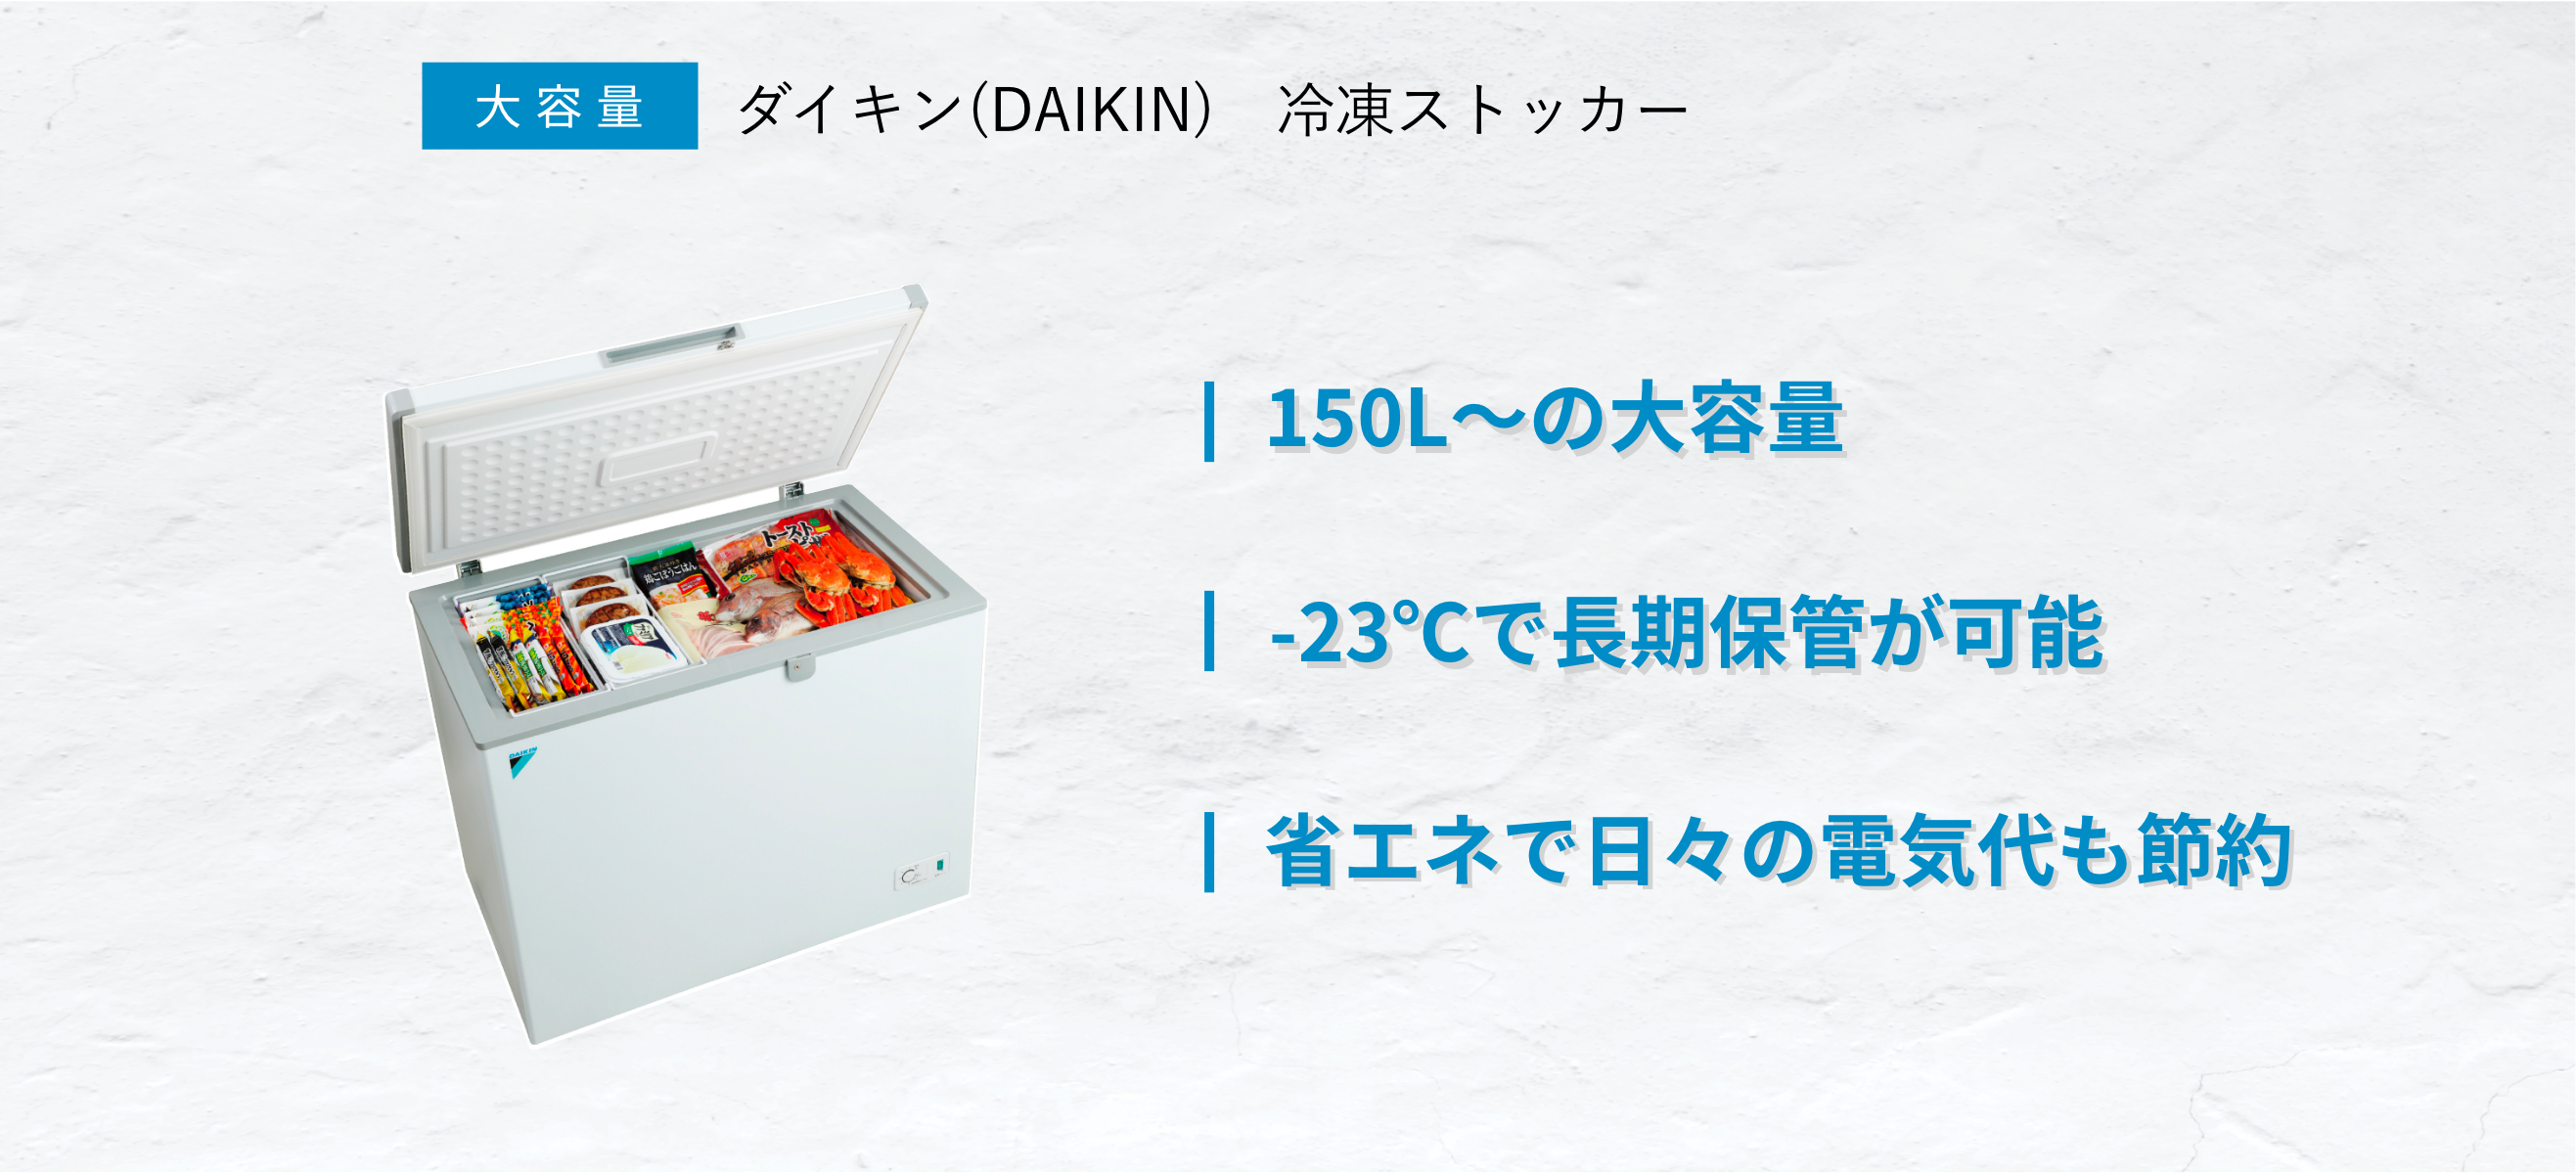 ダイキンの冷凍ストッカーは飲食店・ご自宅におすすめな大容量業務用